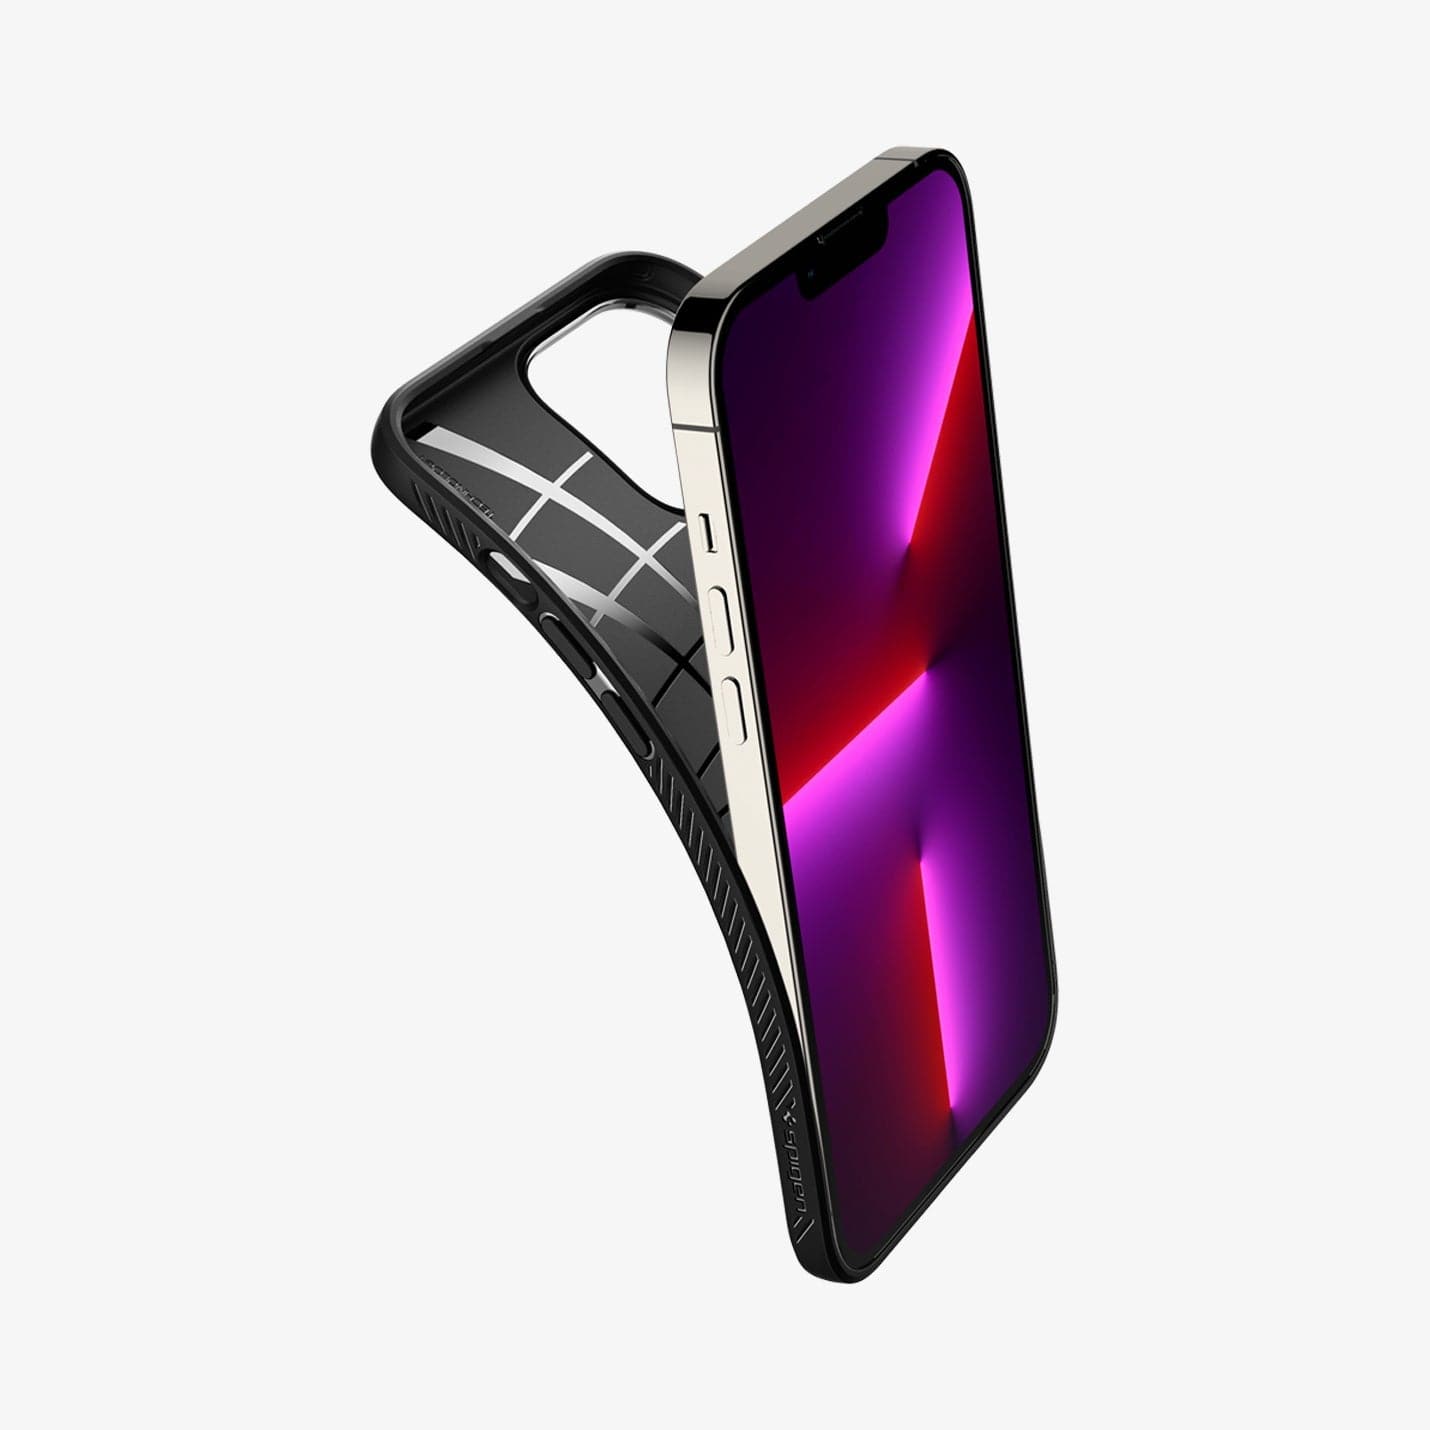 iPhone 13 Series Tough Armor Case -  Official Site – Spigen Inc